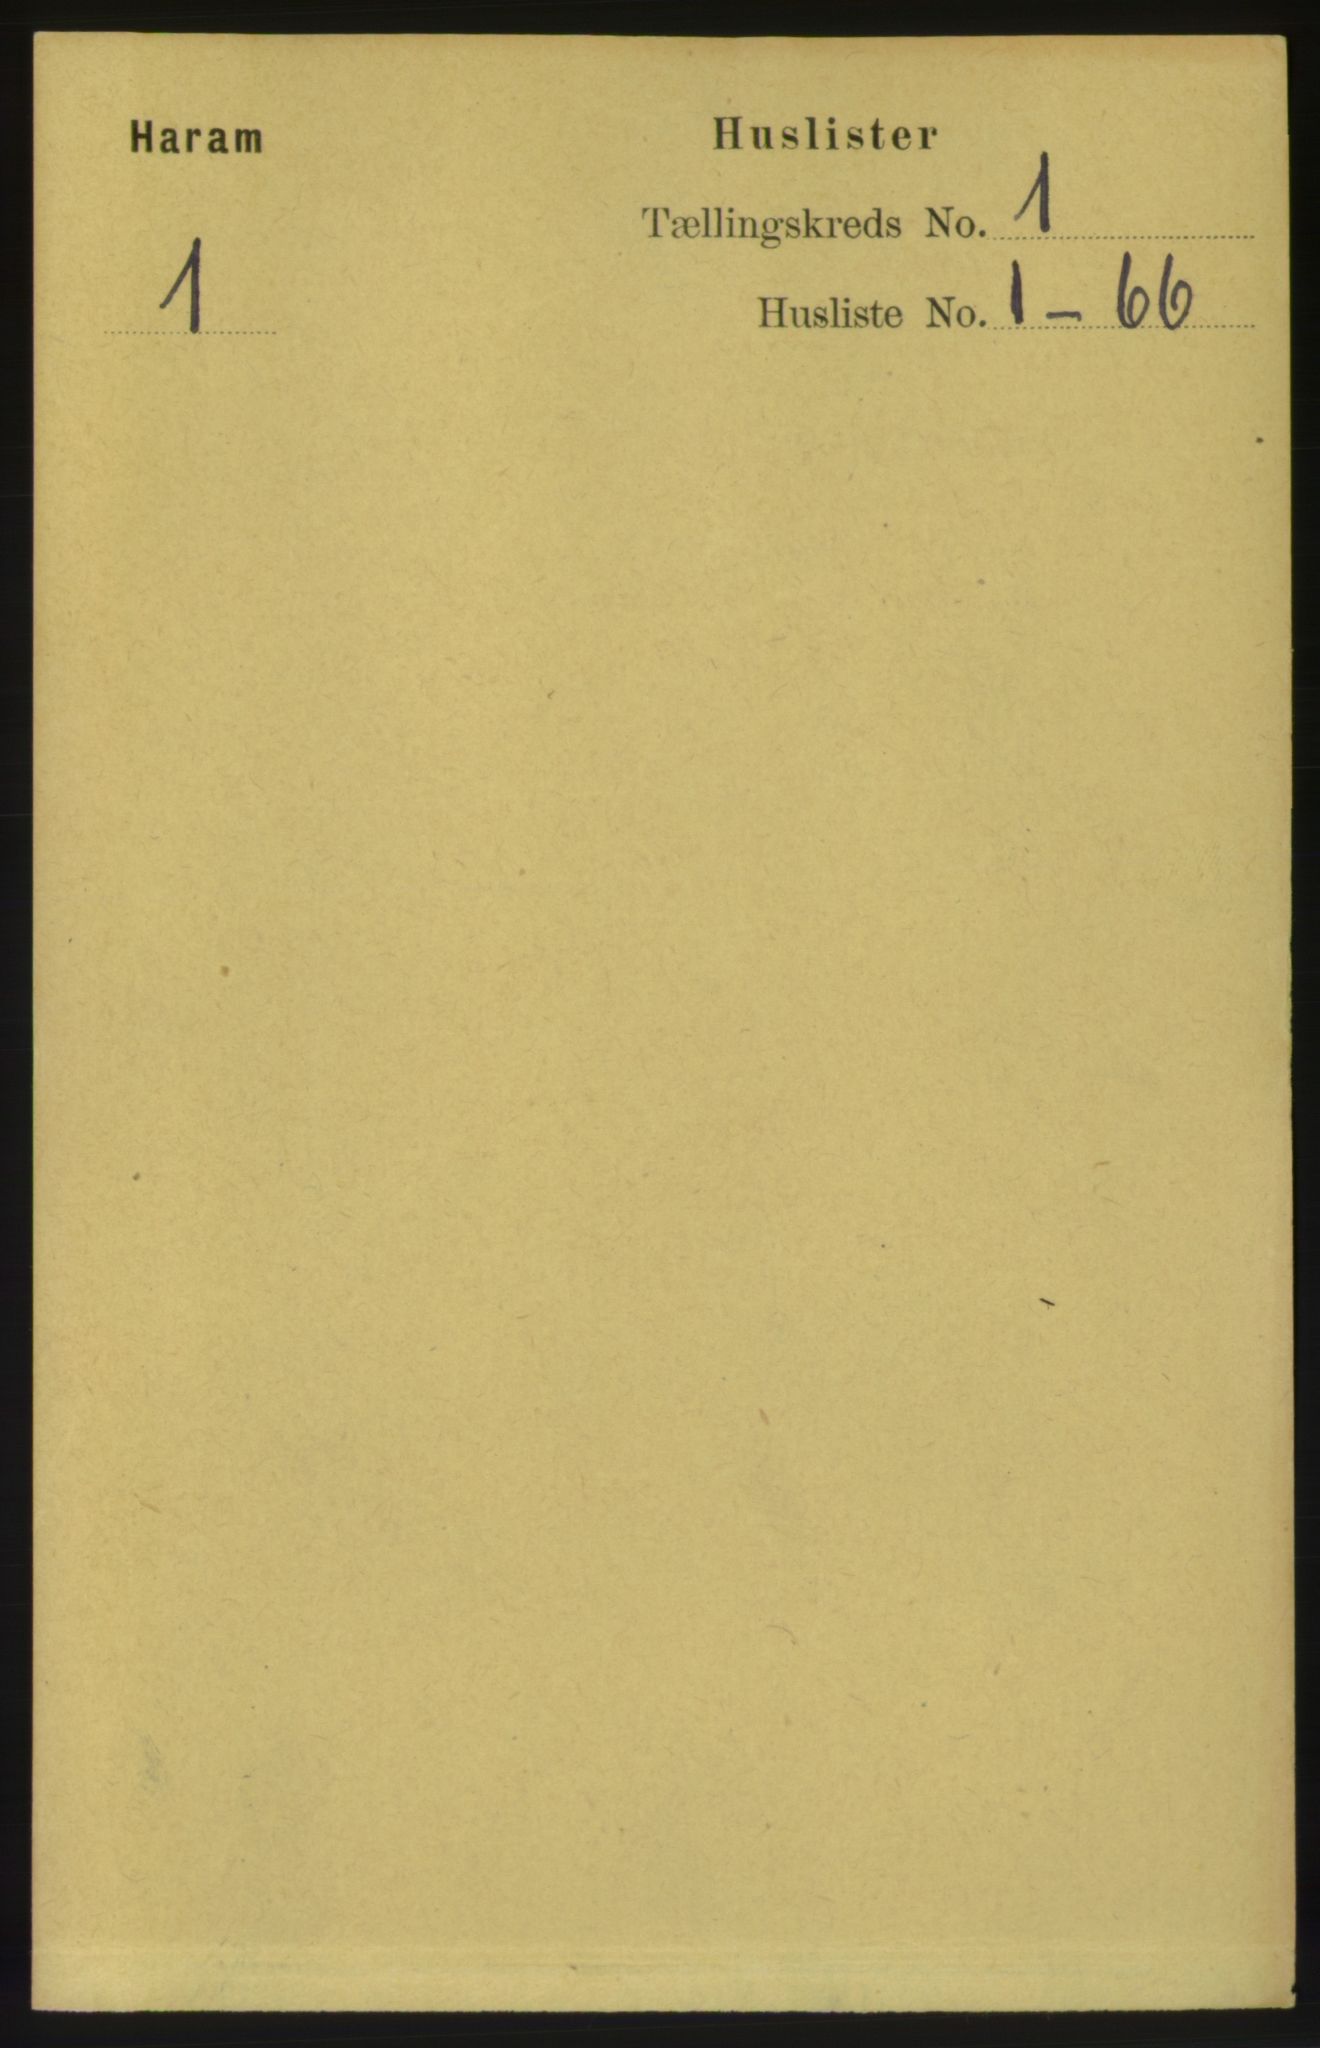 RA, Folketelling 1891 for 1534 Haram herred, 1891, s. 15